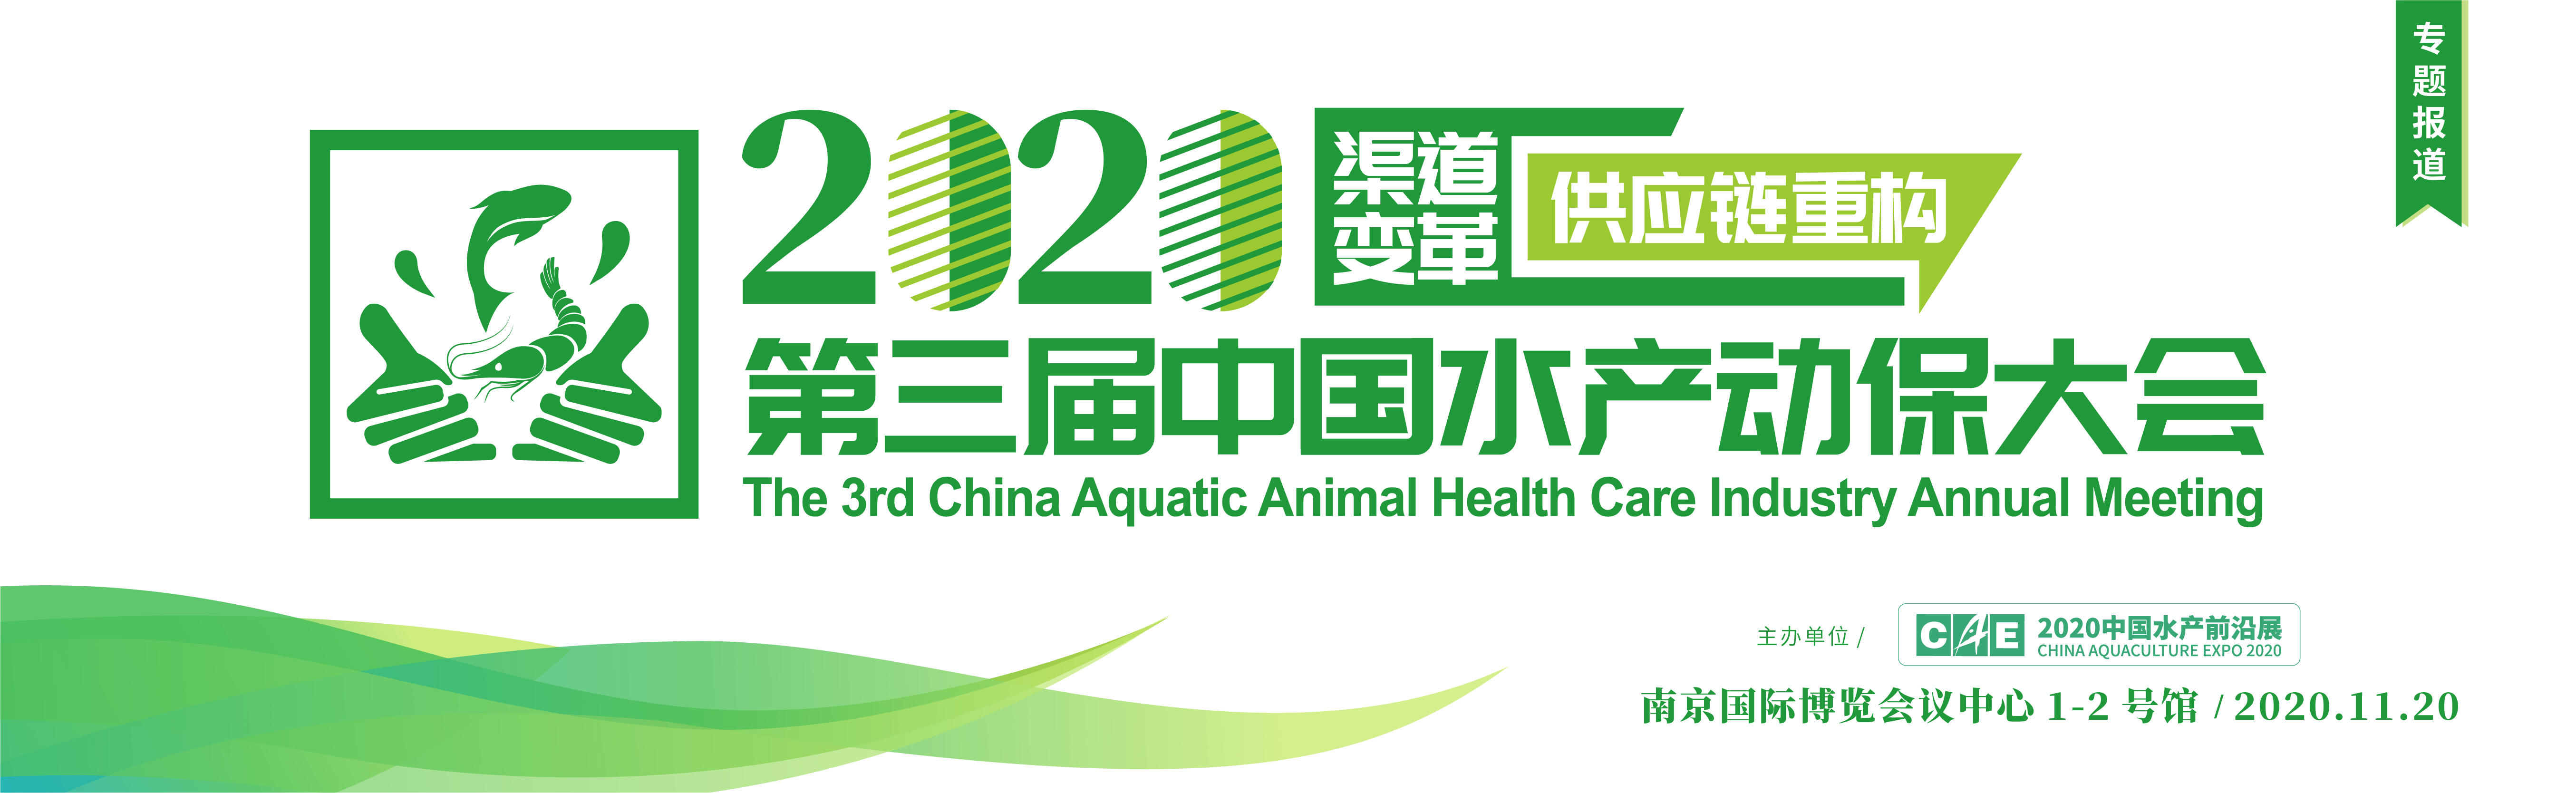 2020第三届中国水产动保大会